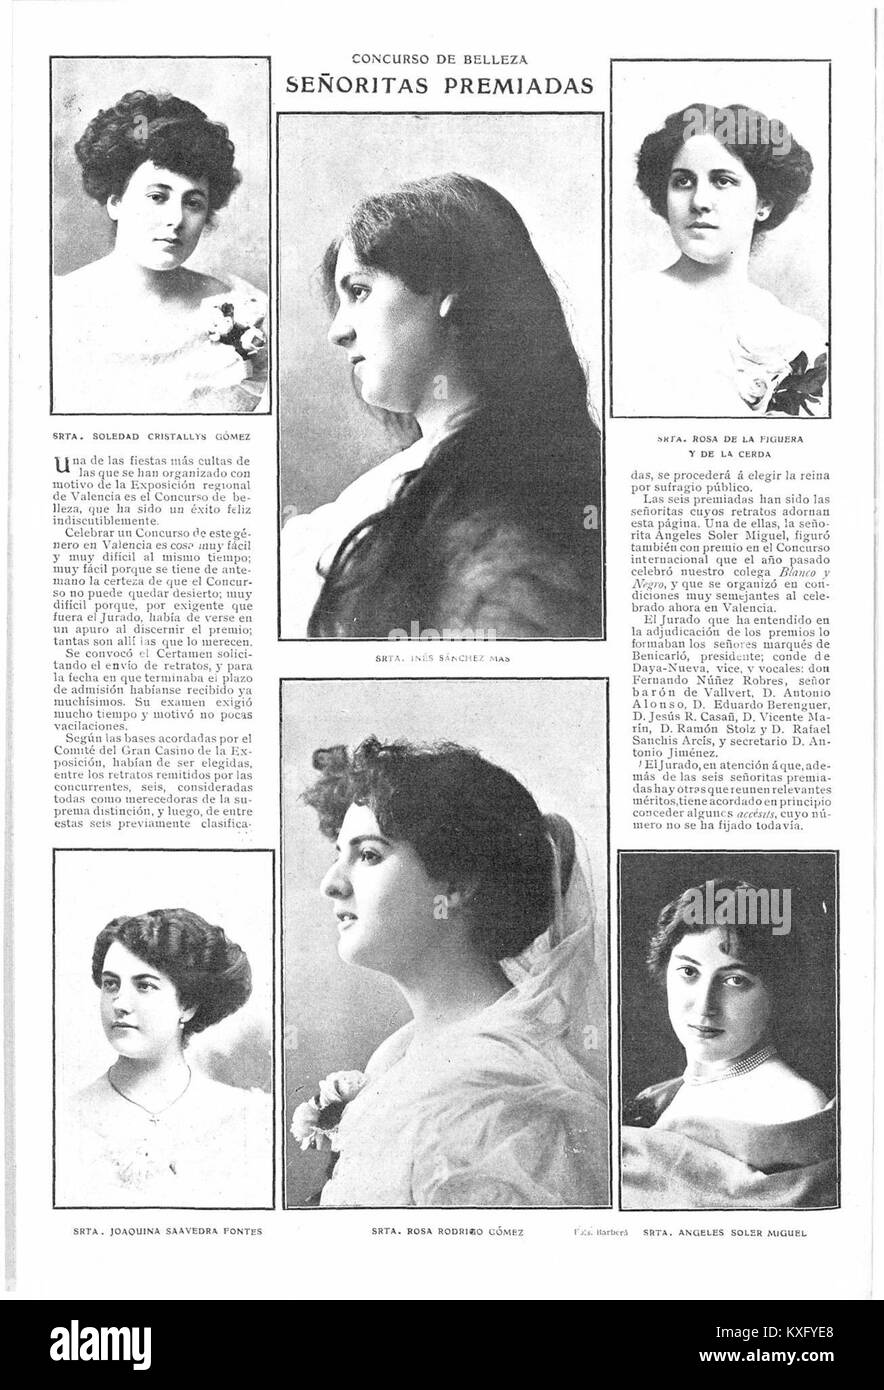 1909-05-19, Actualidades, Concurso de belleza, señoritas premiadas, Barberá Foto Stock